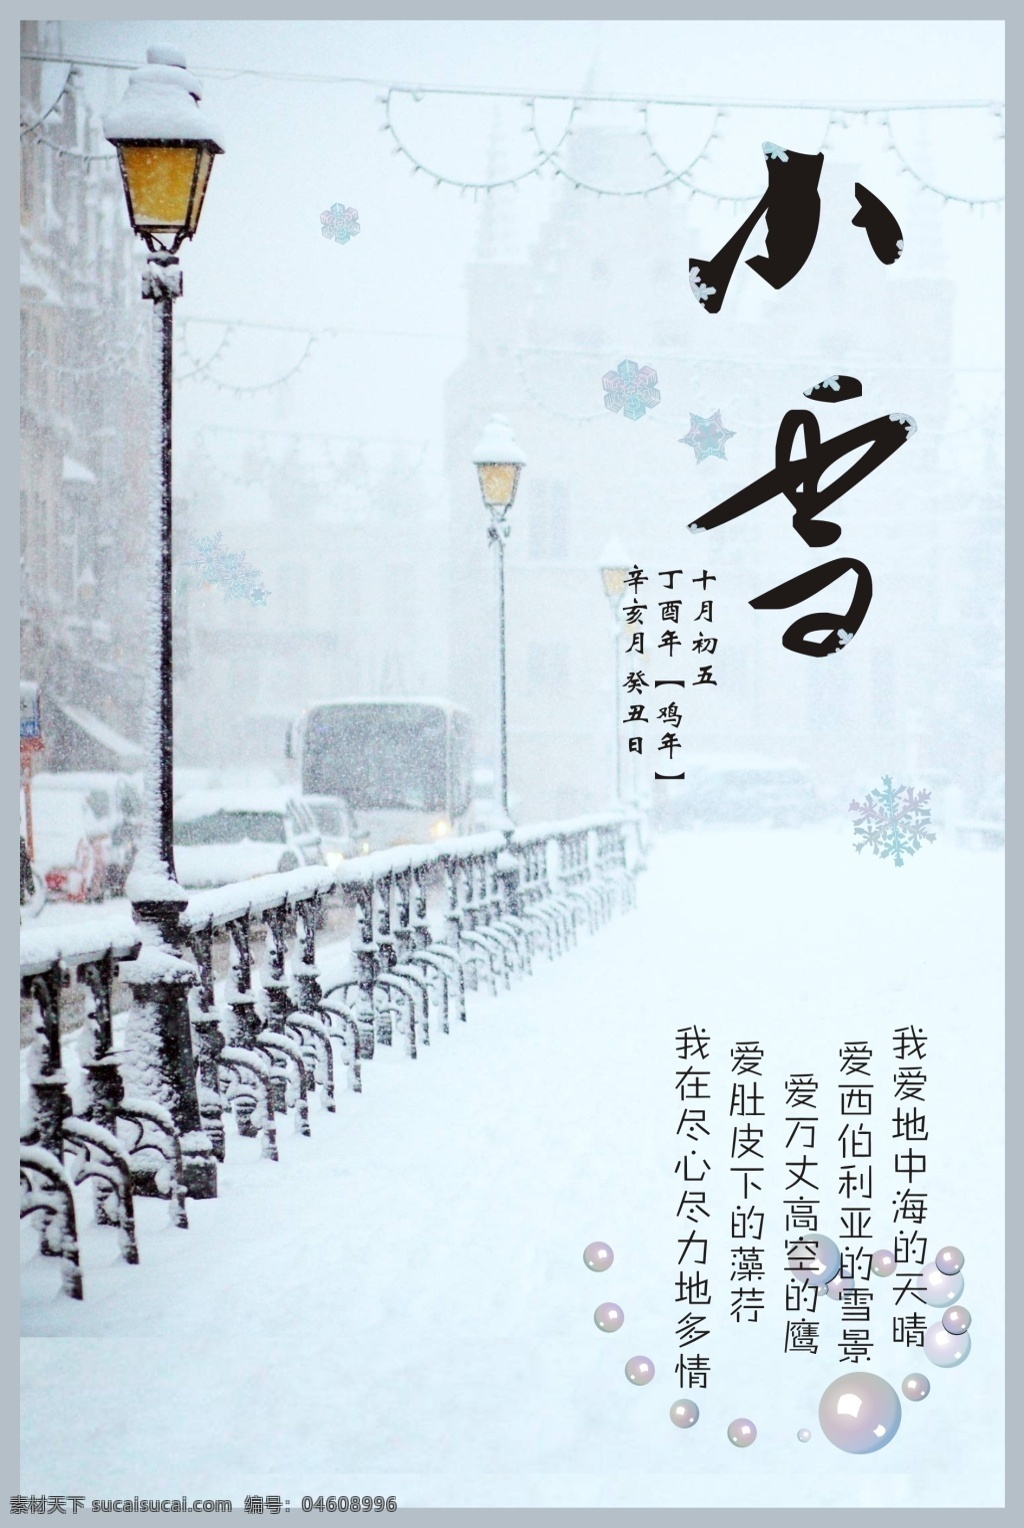 小雪 二十四节气 节日 冬天 节气海报 歌词海报 小雪海报